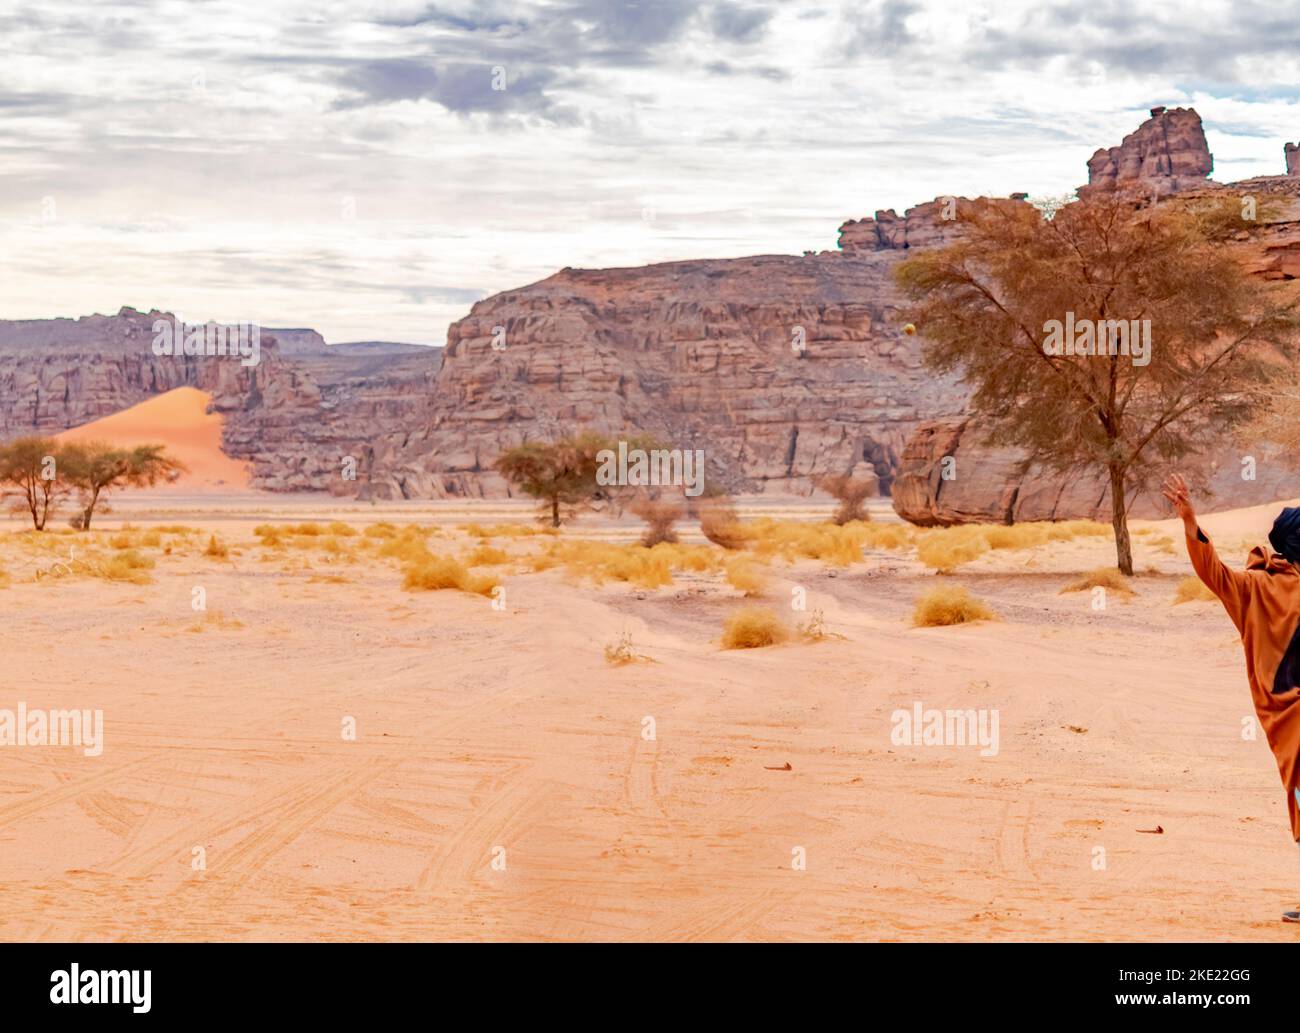 Tadraart Rouge moitié tuareg homme soulève bras dans le désert du Sahara Tassili n'Ajjer, Djanet. Acacia, sable dégradé couleur, herbes sèches, pierres de sable jaune, ro Banque D'Images